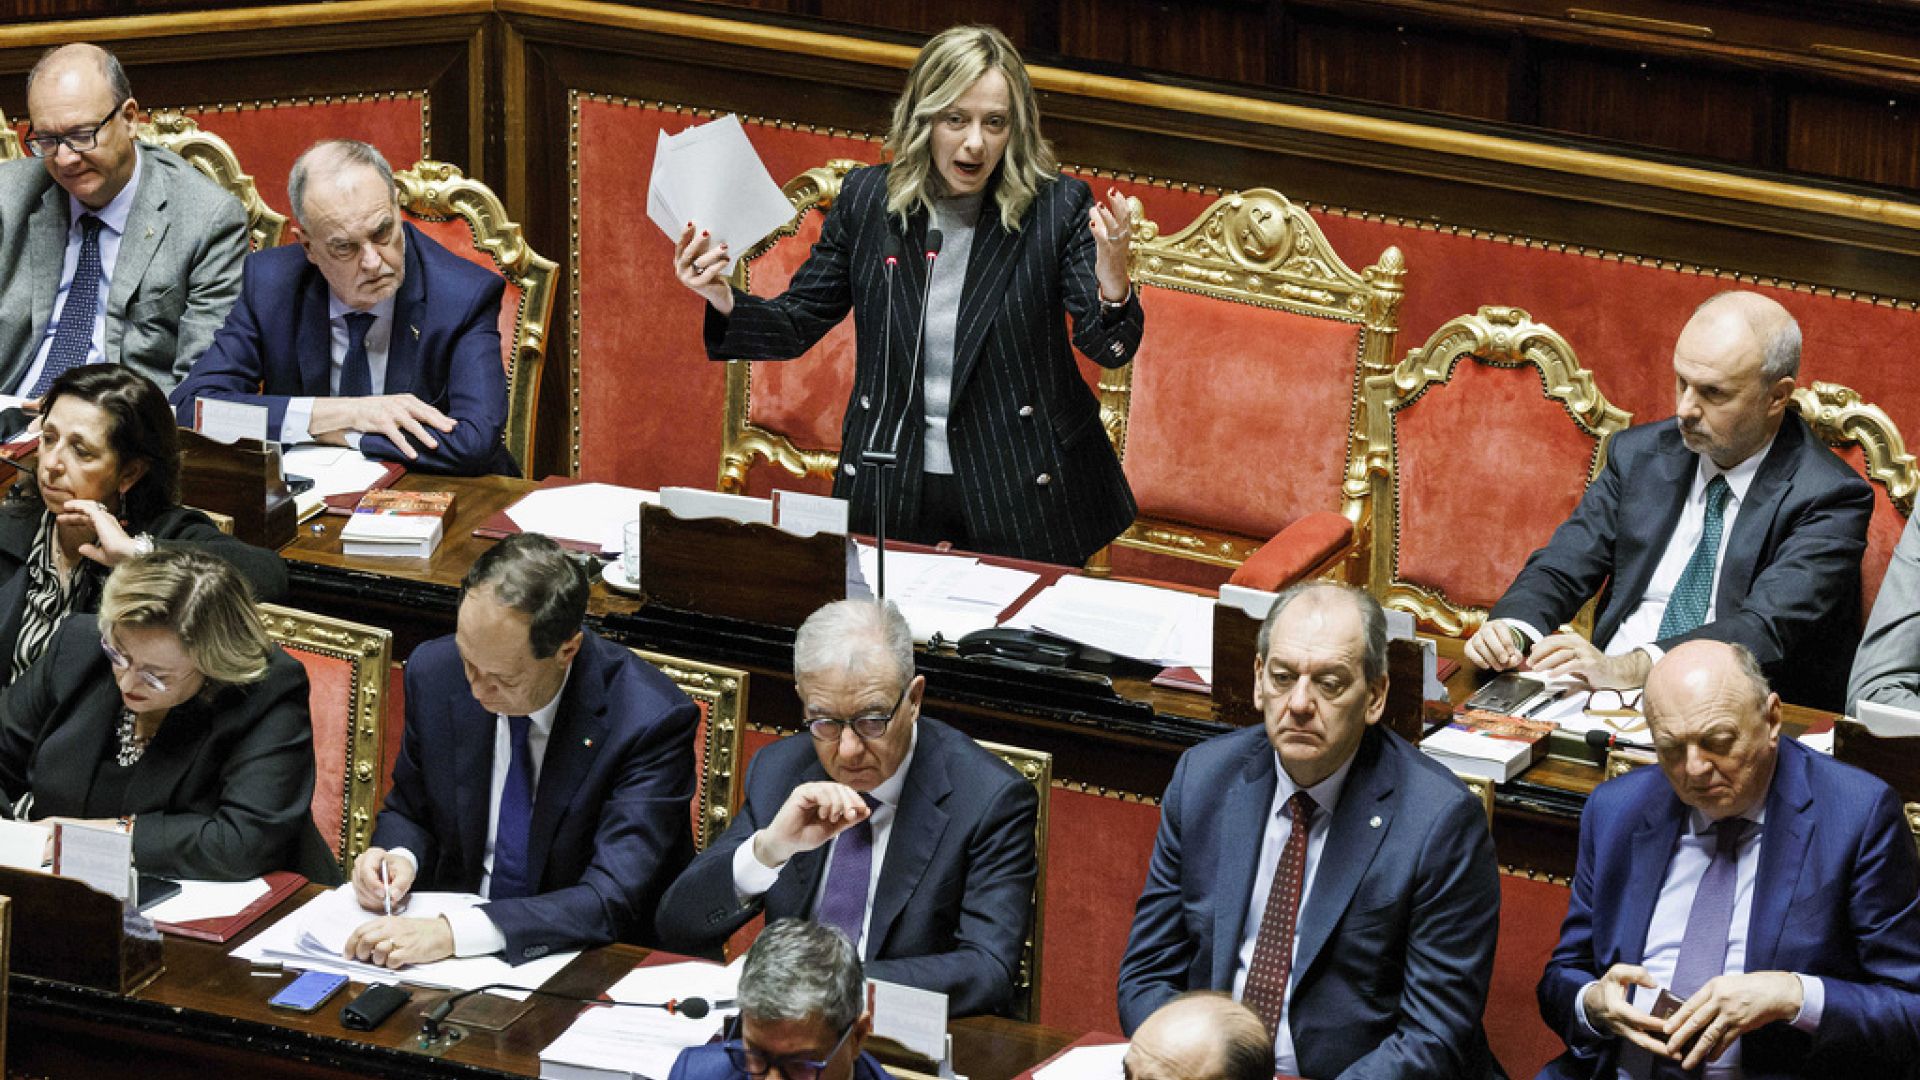 İtalyan senatörün 'kadınların birinci arzusu annelik olmalı' açıklaması tartışmaya yol açtı